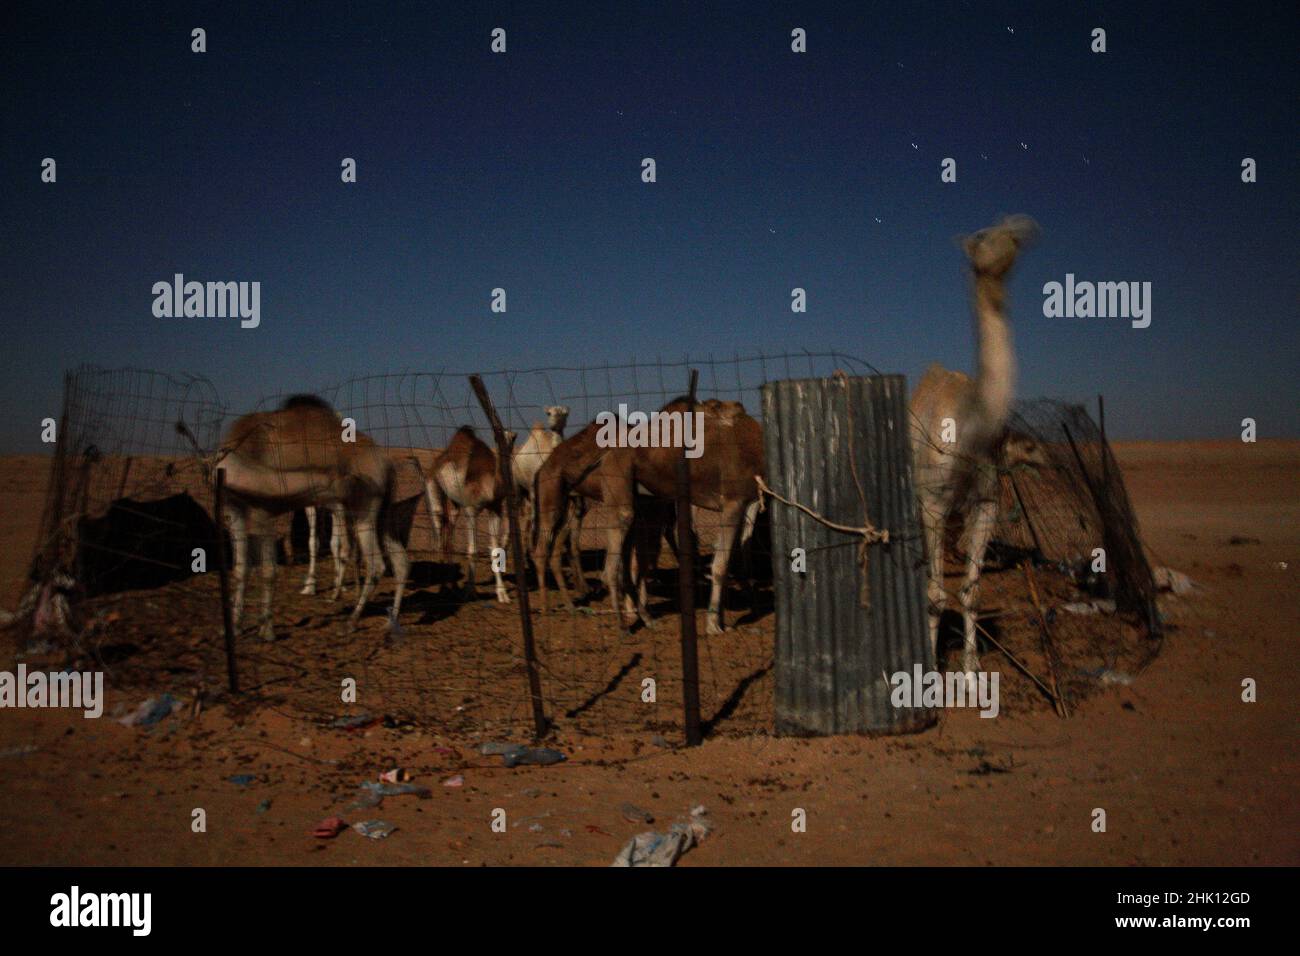 Un groupe de chameaux, la nuit, au camp de réfugiés de Smara Sahrawi, à Tindouf, en Algérie. Ils sont utilisés pour le lait et la viande. Banque D'Images